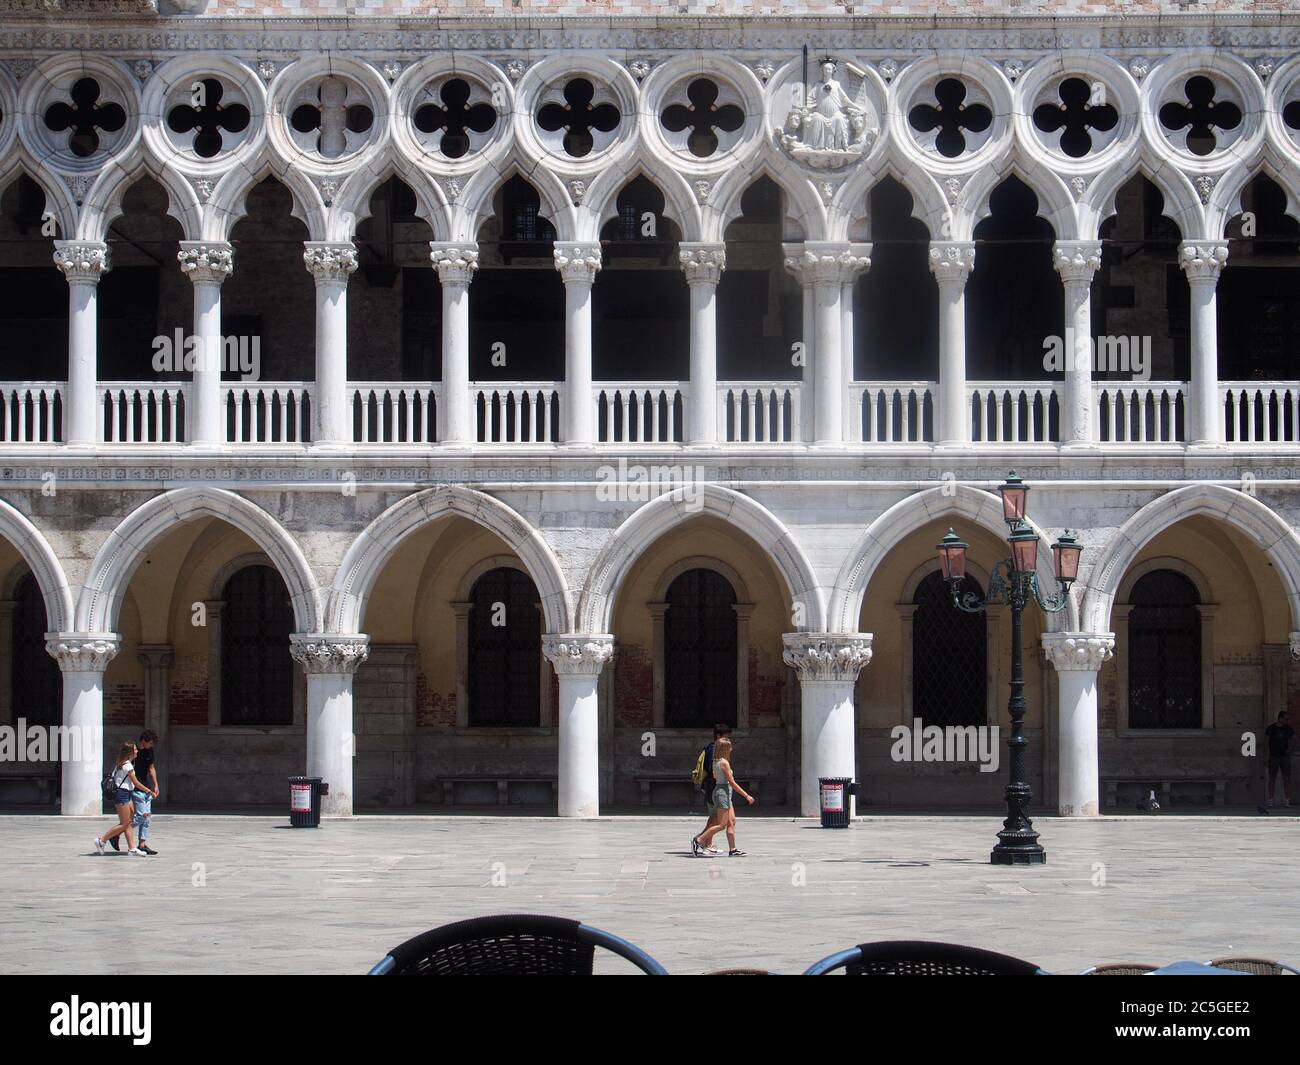 San Marco, Venise, Italie - juillet 2020. Les touristes européens seulement sont lentement de retour dans la Venise déserte après Covid-19 confinement ville lutte pour survivre Banque D'Images